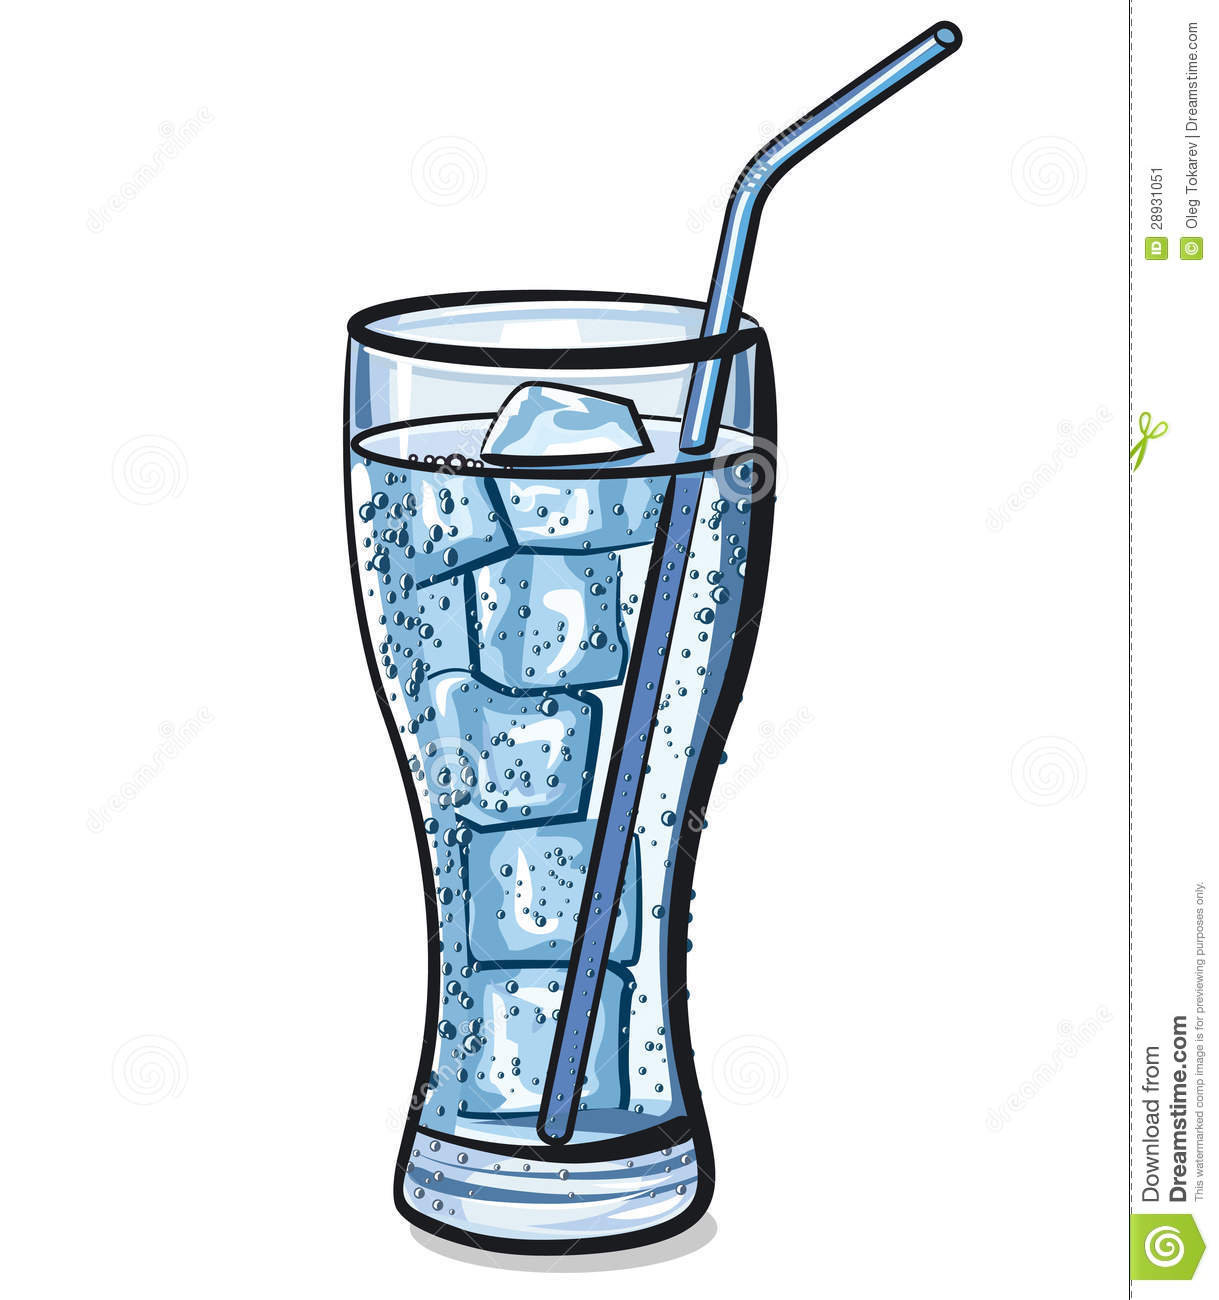 glass of water clipart - Glass Of Water Clipart